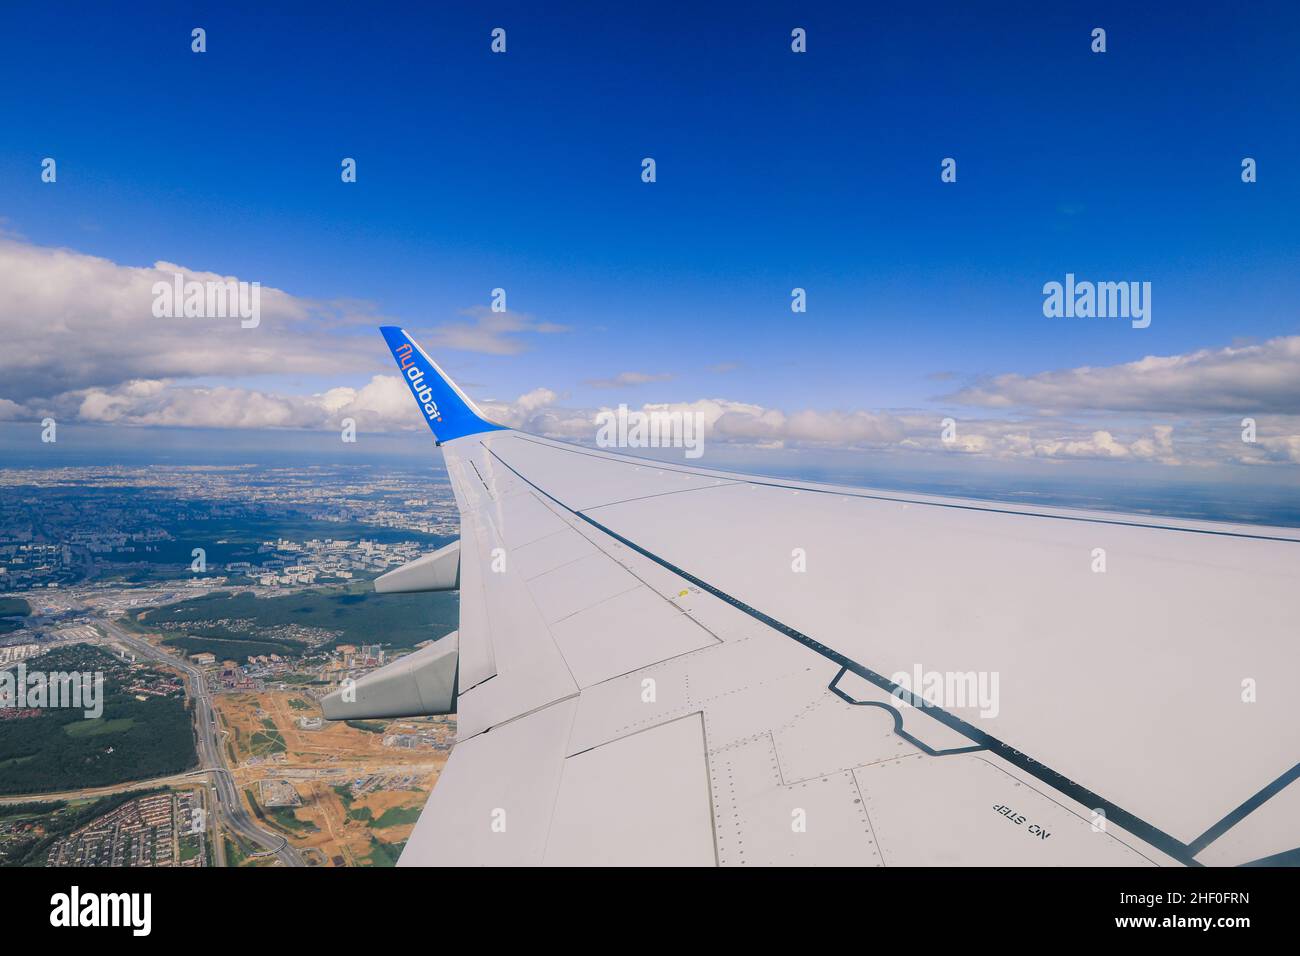 Dubai, Vereinigte Arabische Emirate - 10. Juni 2021: Fensteransicht zum Flugzeugflügel und wolkiger blauer Himmel Stockfoto